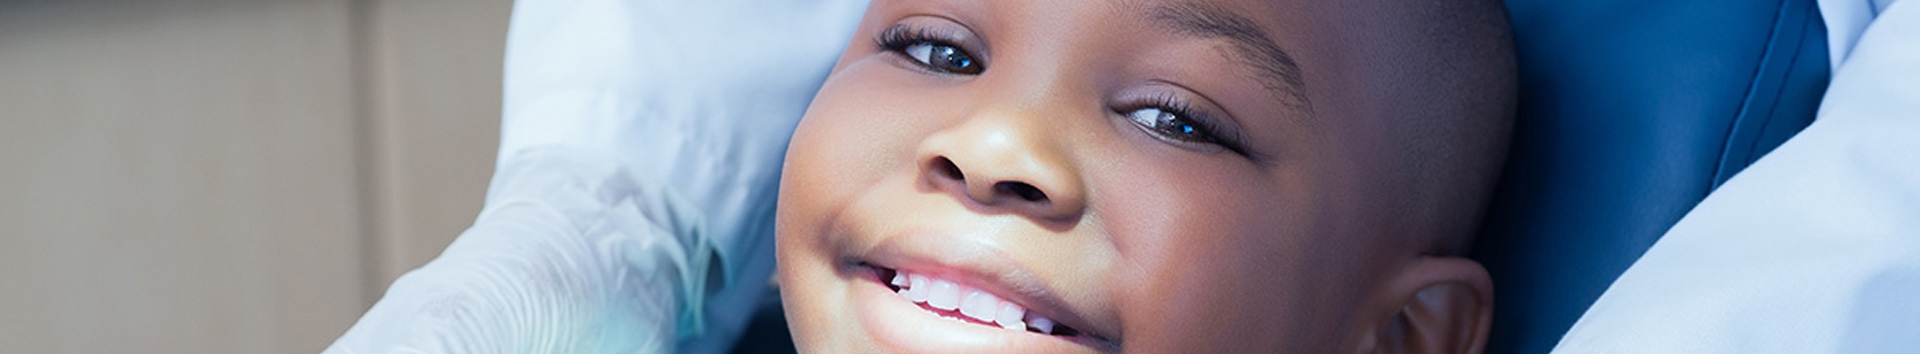 Tudo sobre Odontopediatria e sua importância para as crianças